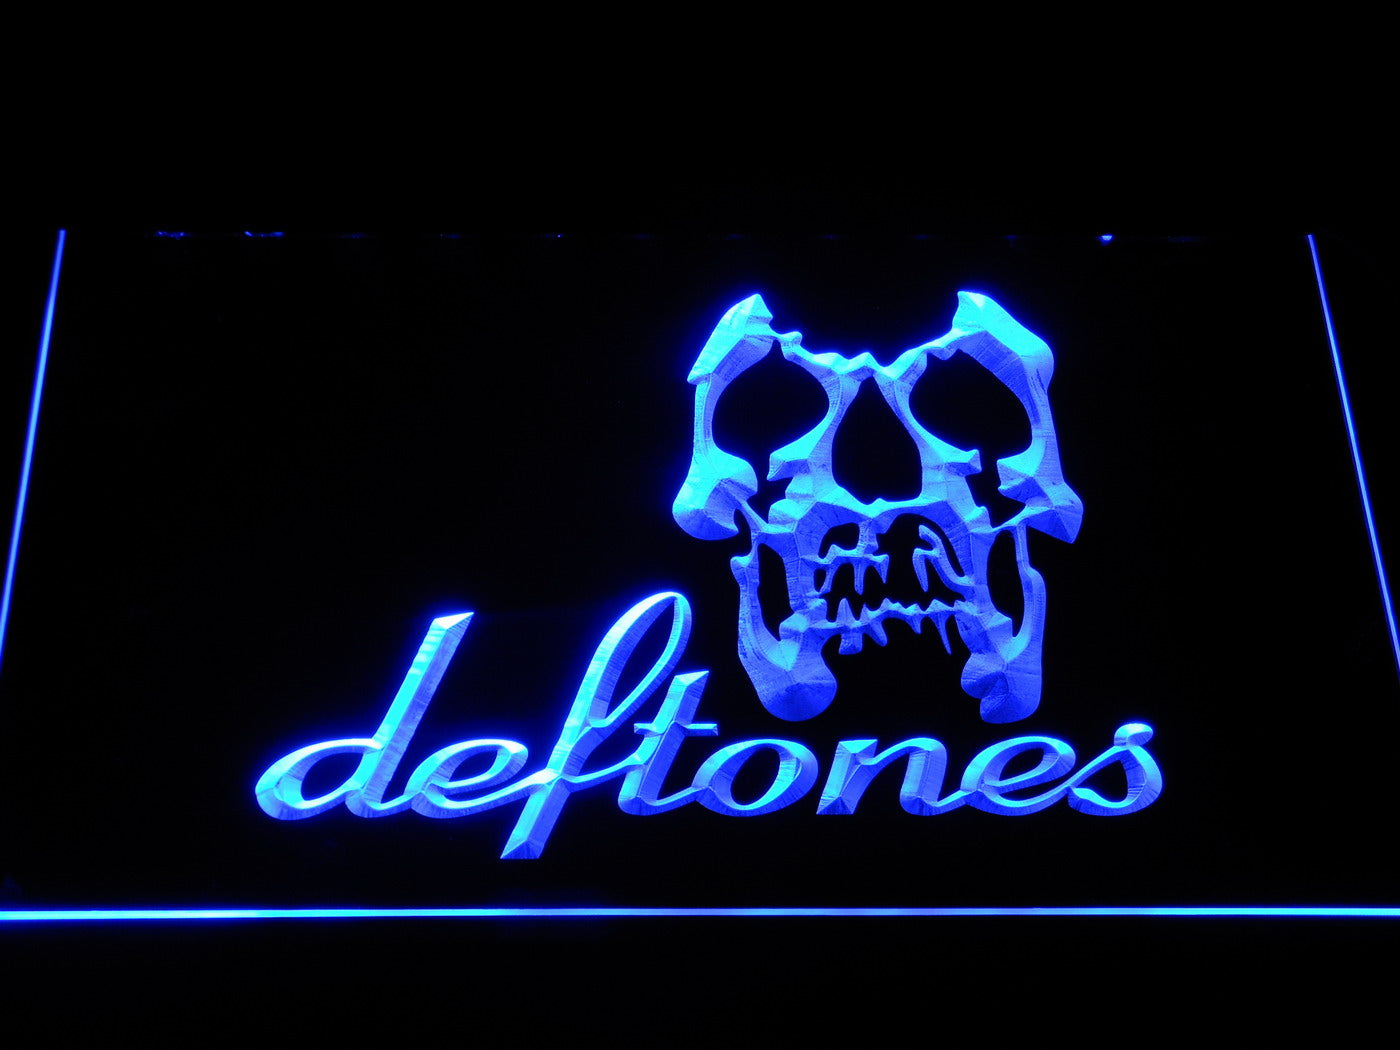 Deftones Skull Metal Band Neon Light LED Sign